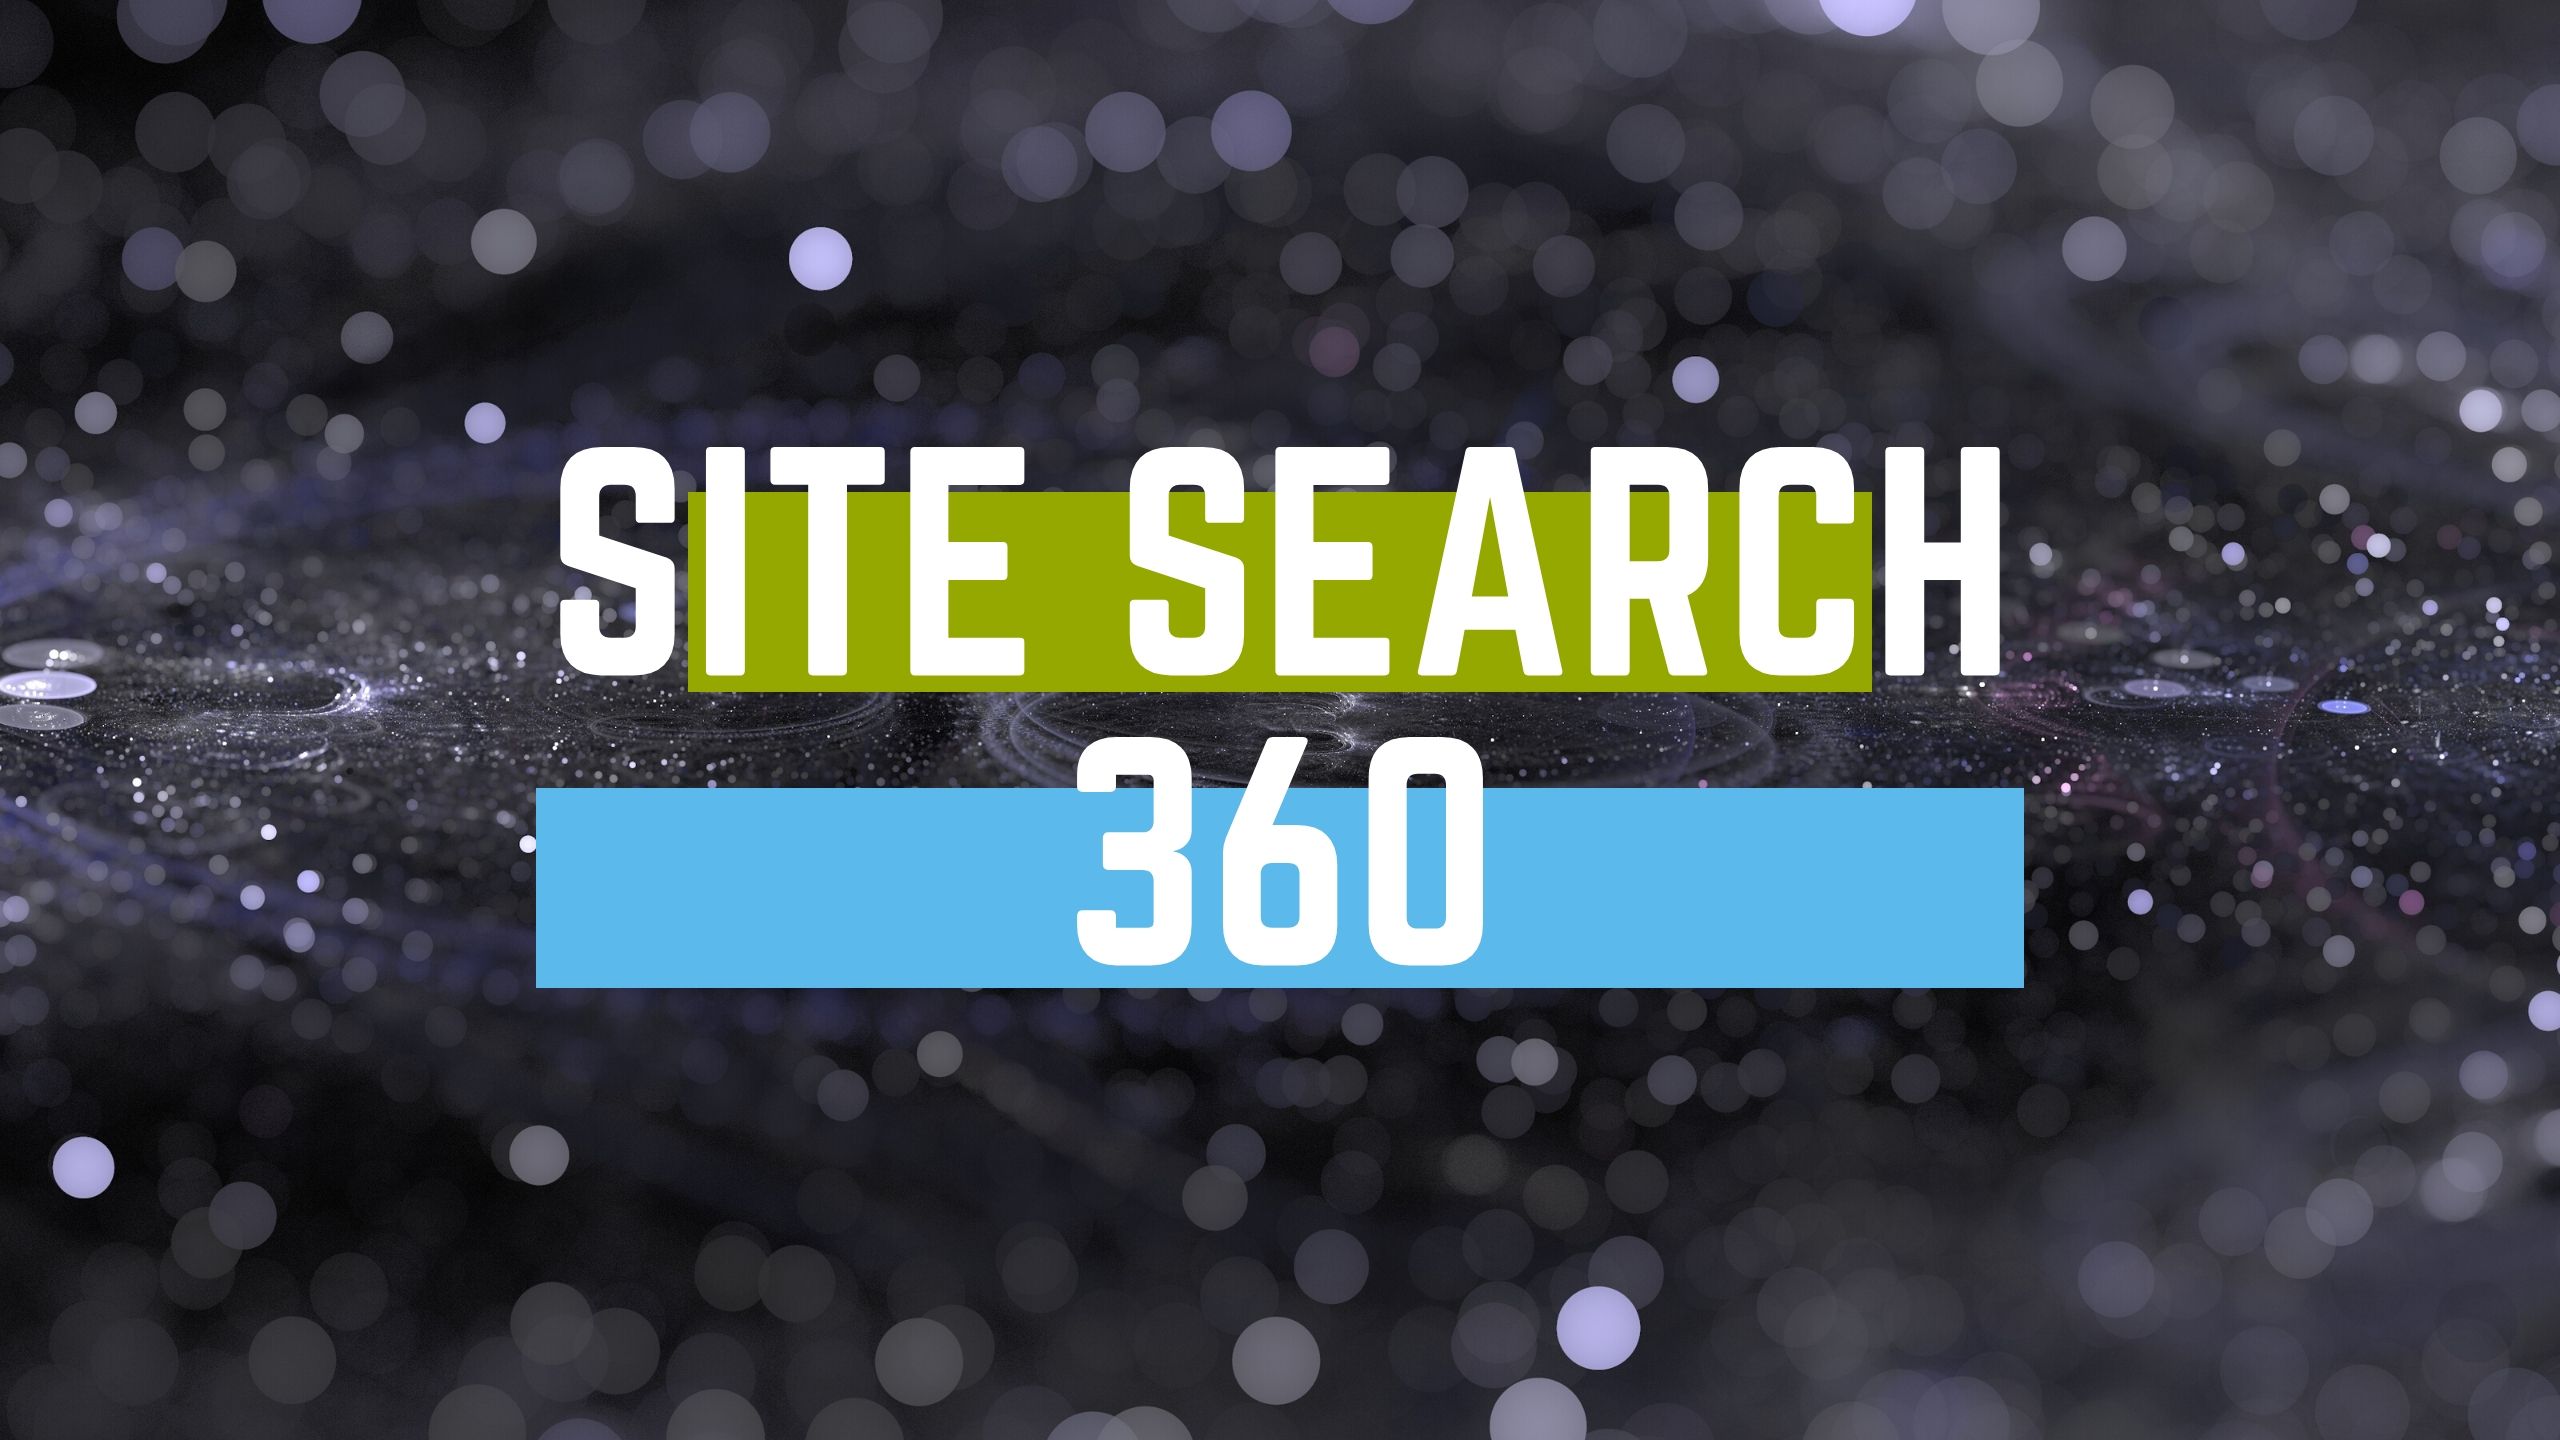 Site search 360